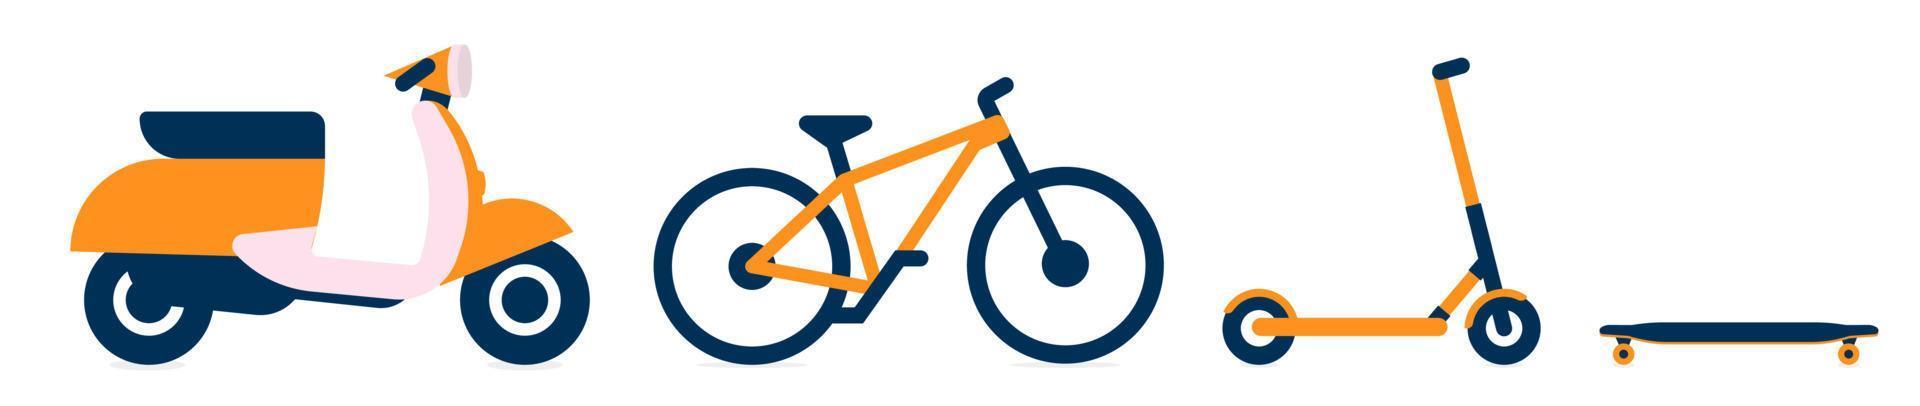 transporte para serviço de entrega de comida, conjunto de ícones de bicicleta, bicicleta, patinete e longboard. ícones de transporte elétrico para serviço de aluguel. ilustração vetorial isolado. vetor